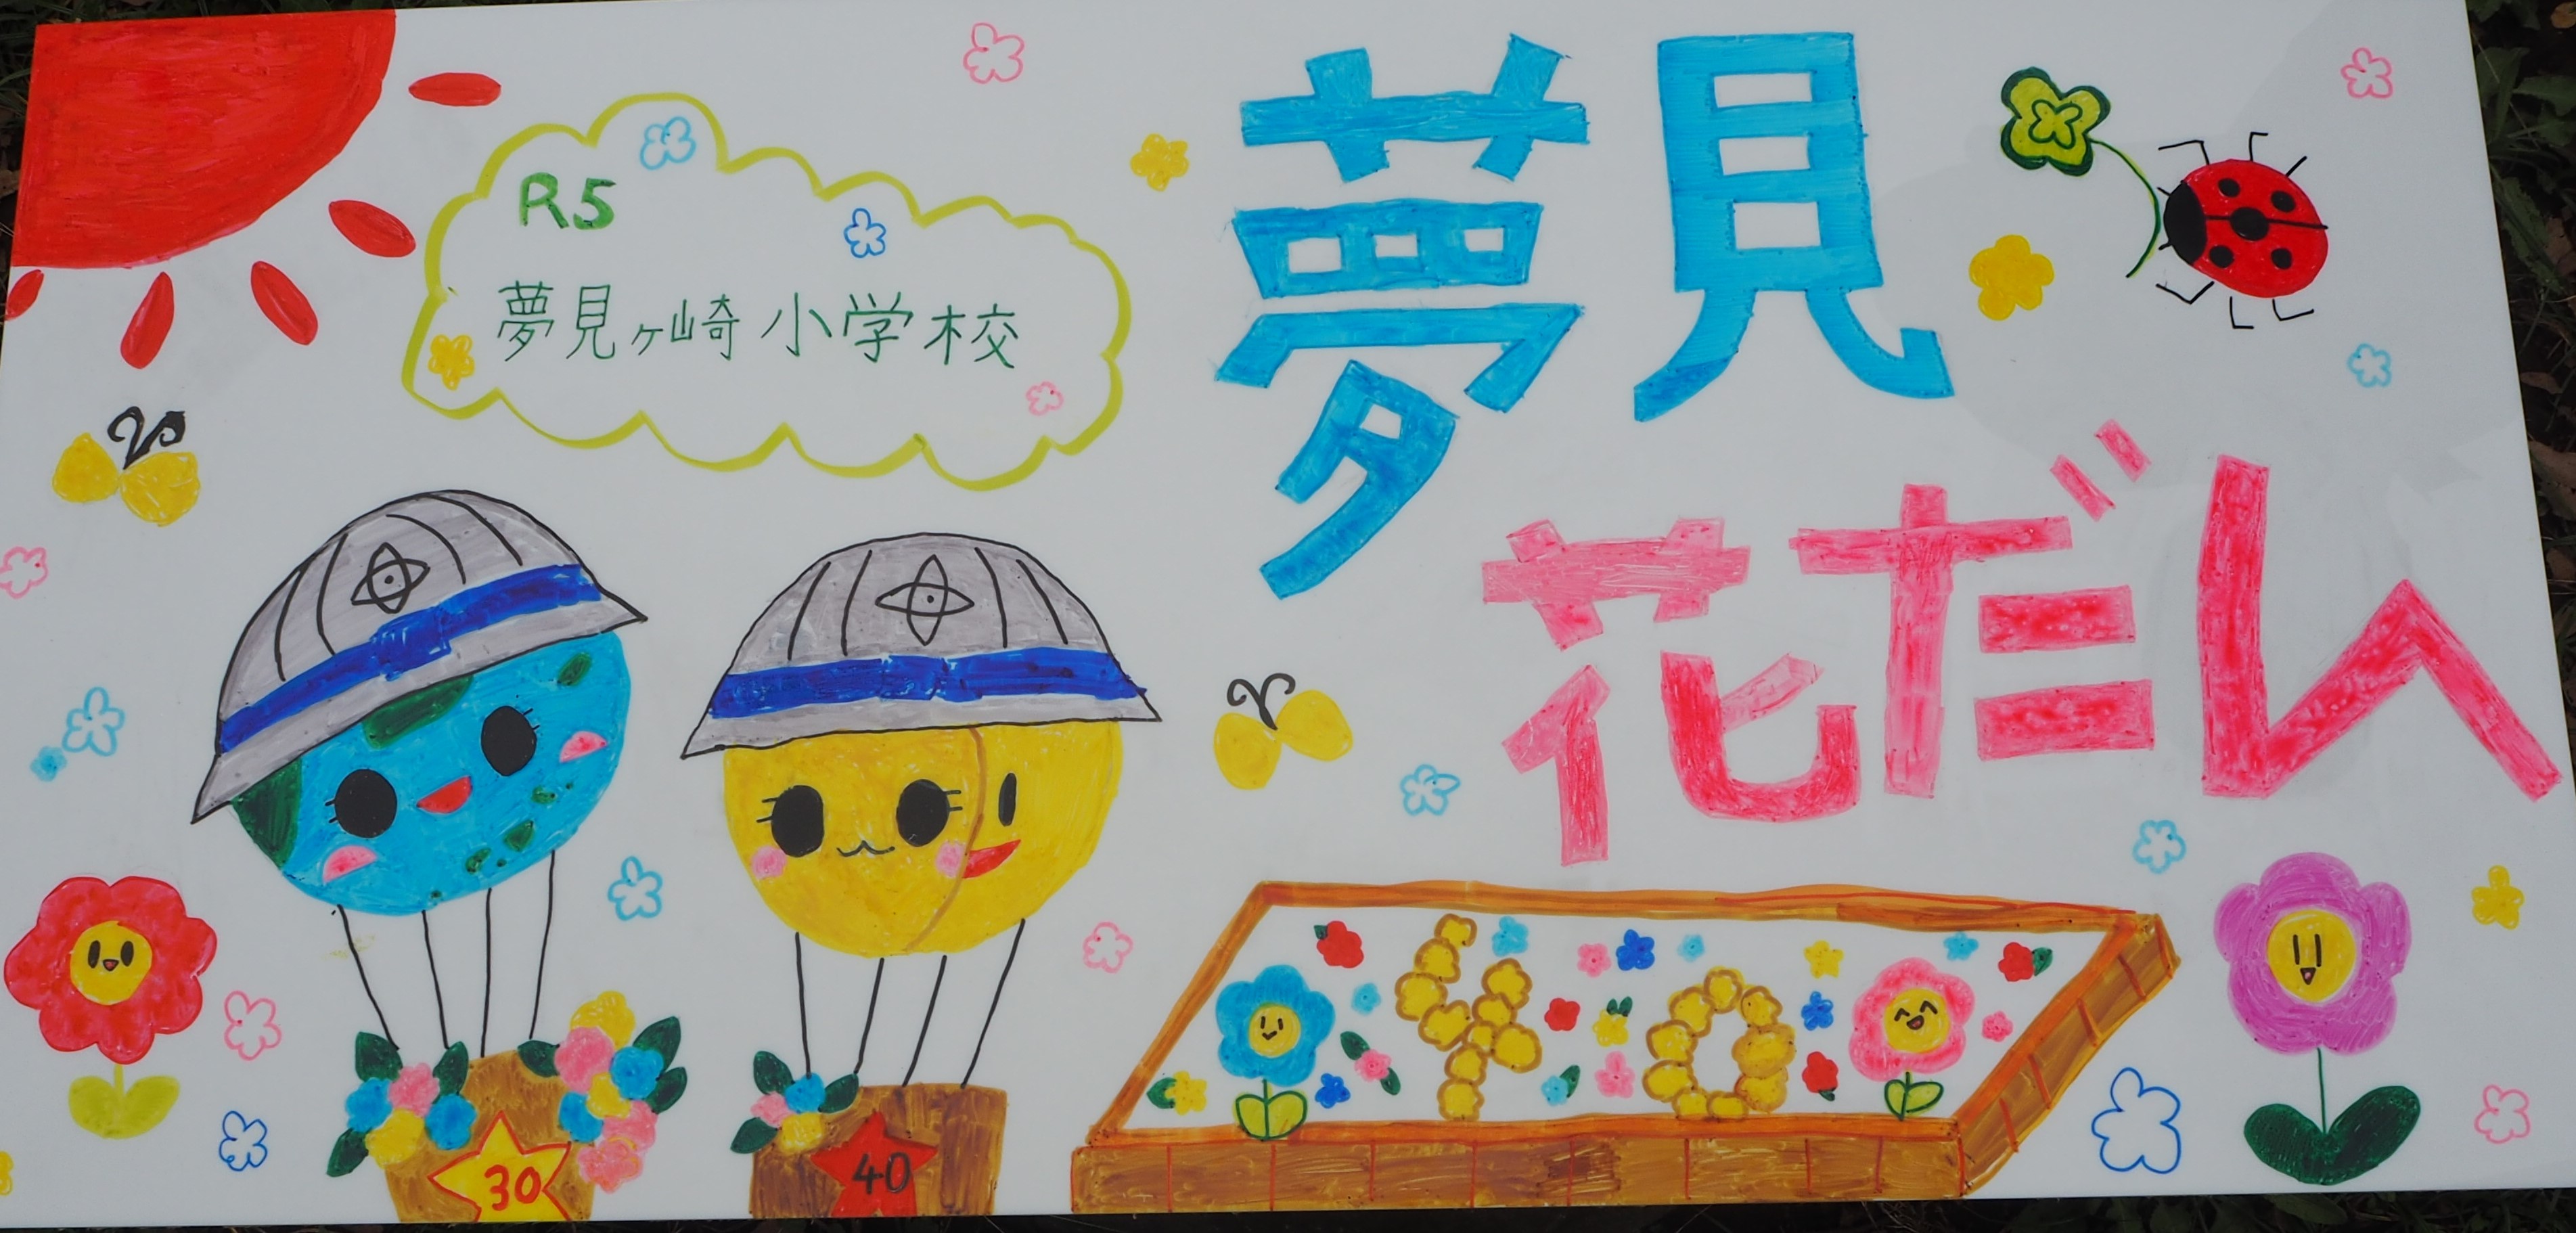 夢見ヶ崎小学校が作製した手描きオリジナル看板